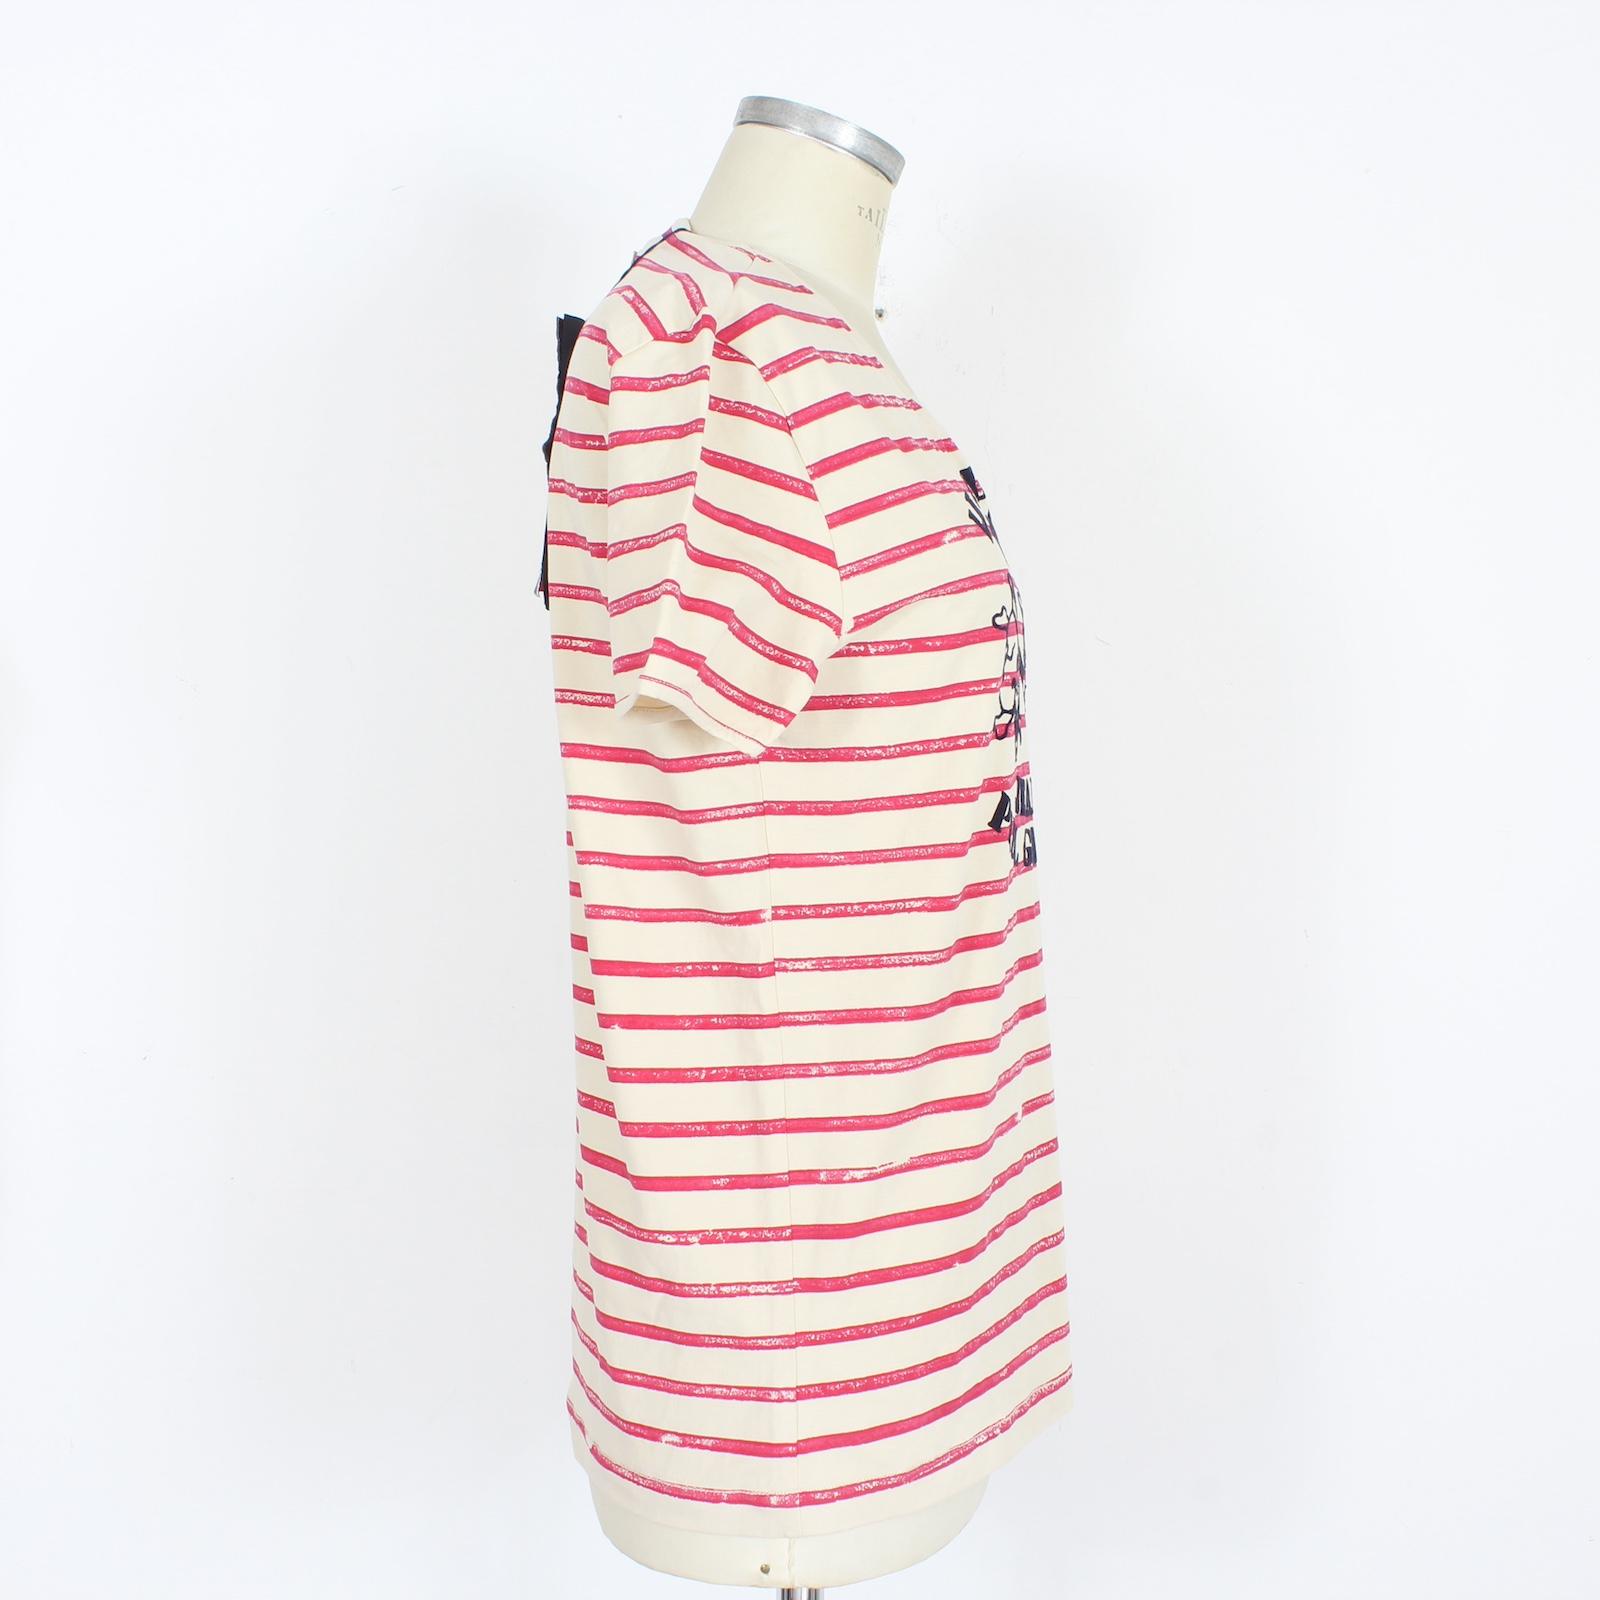  Jean Paul Gaultier Beige Pink Cotton Pinstripe Casual T Shirt 2000s Pour femmes 